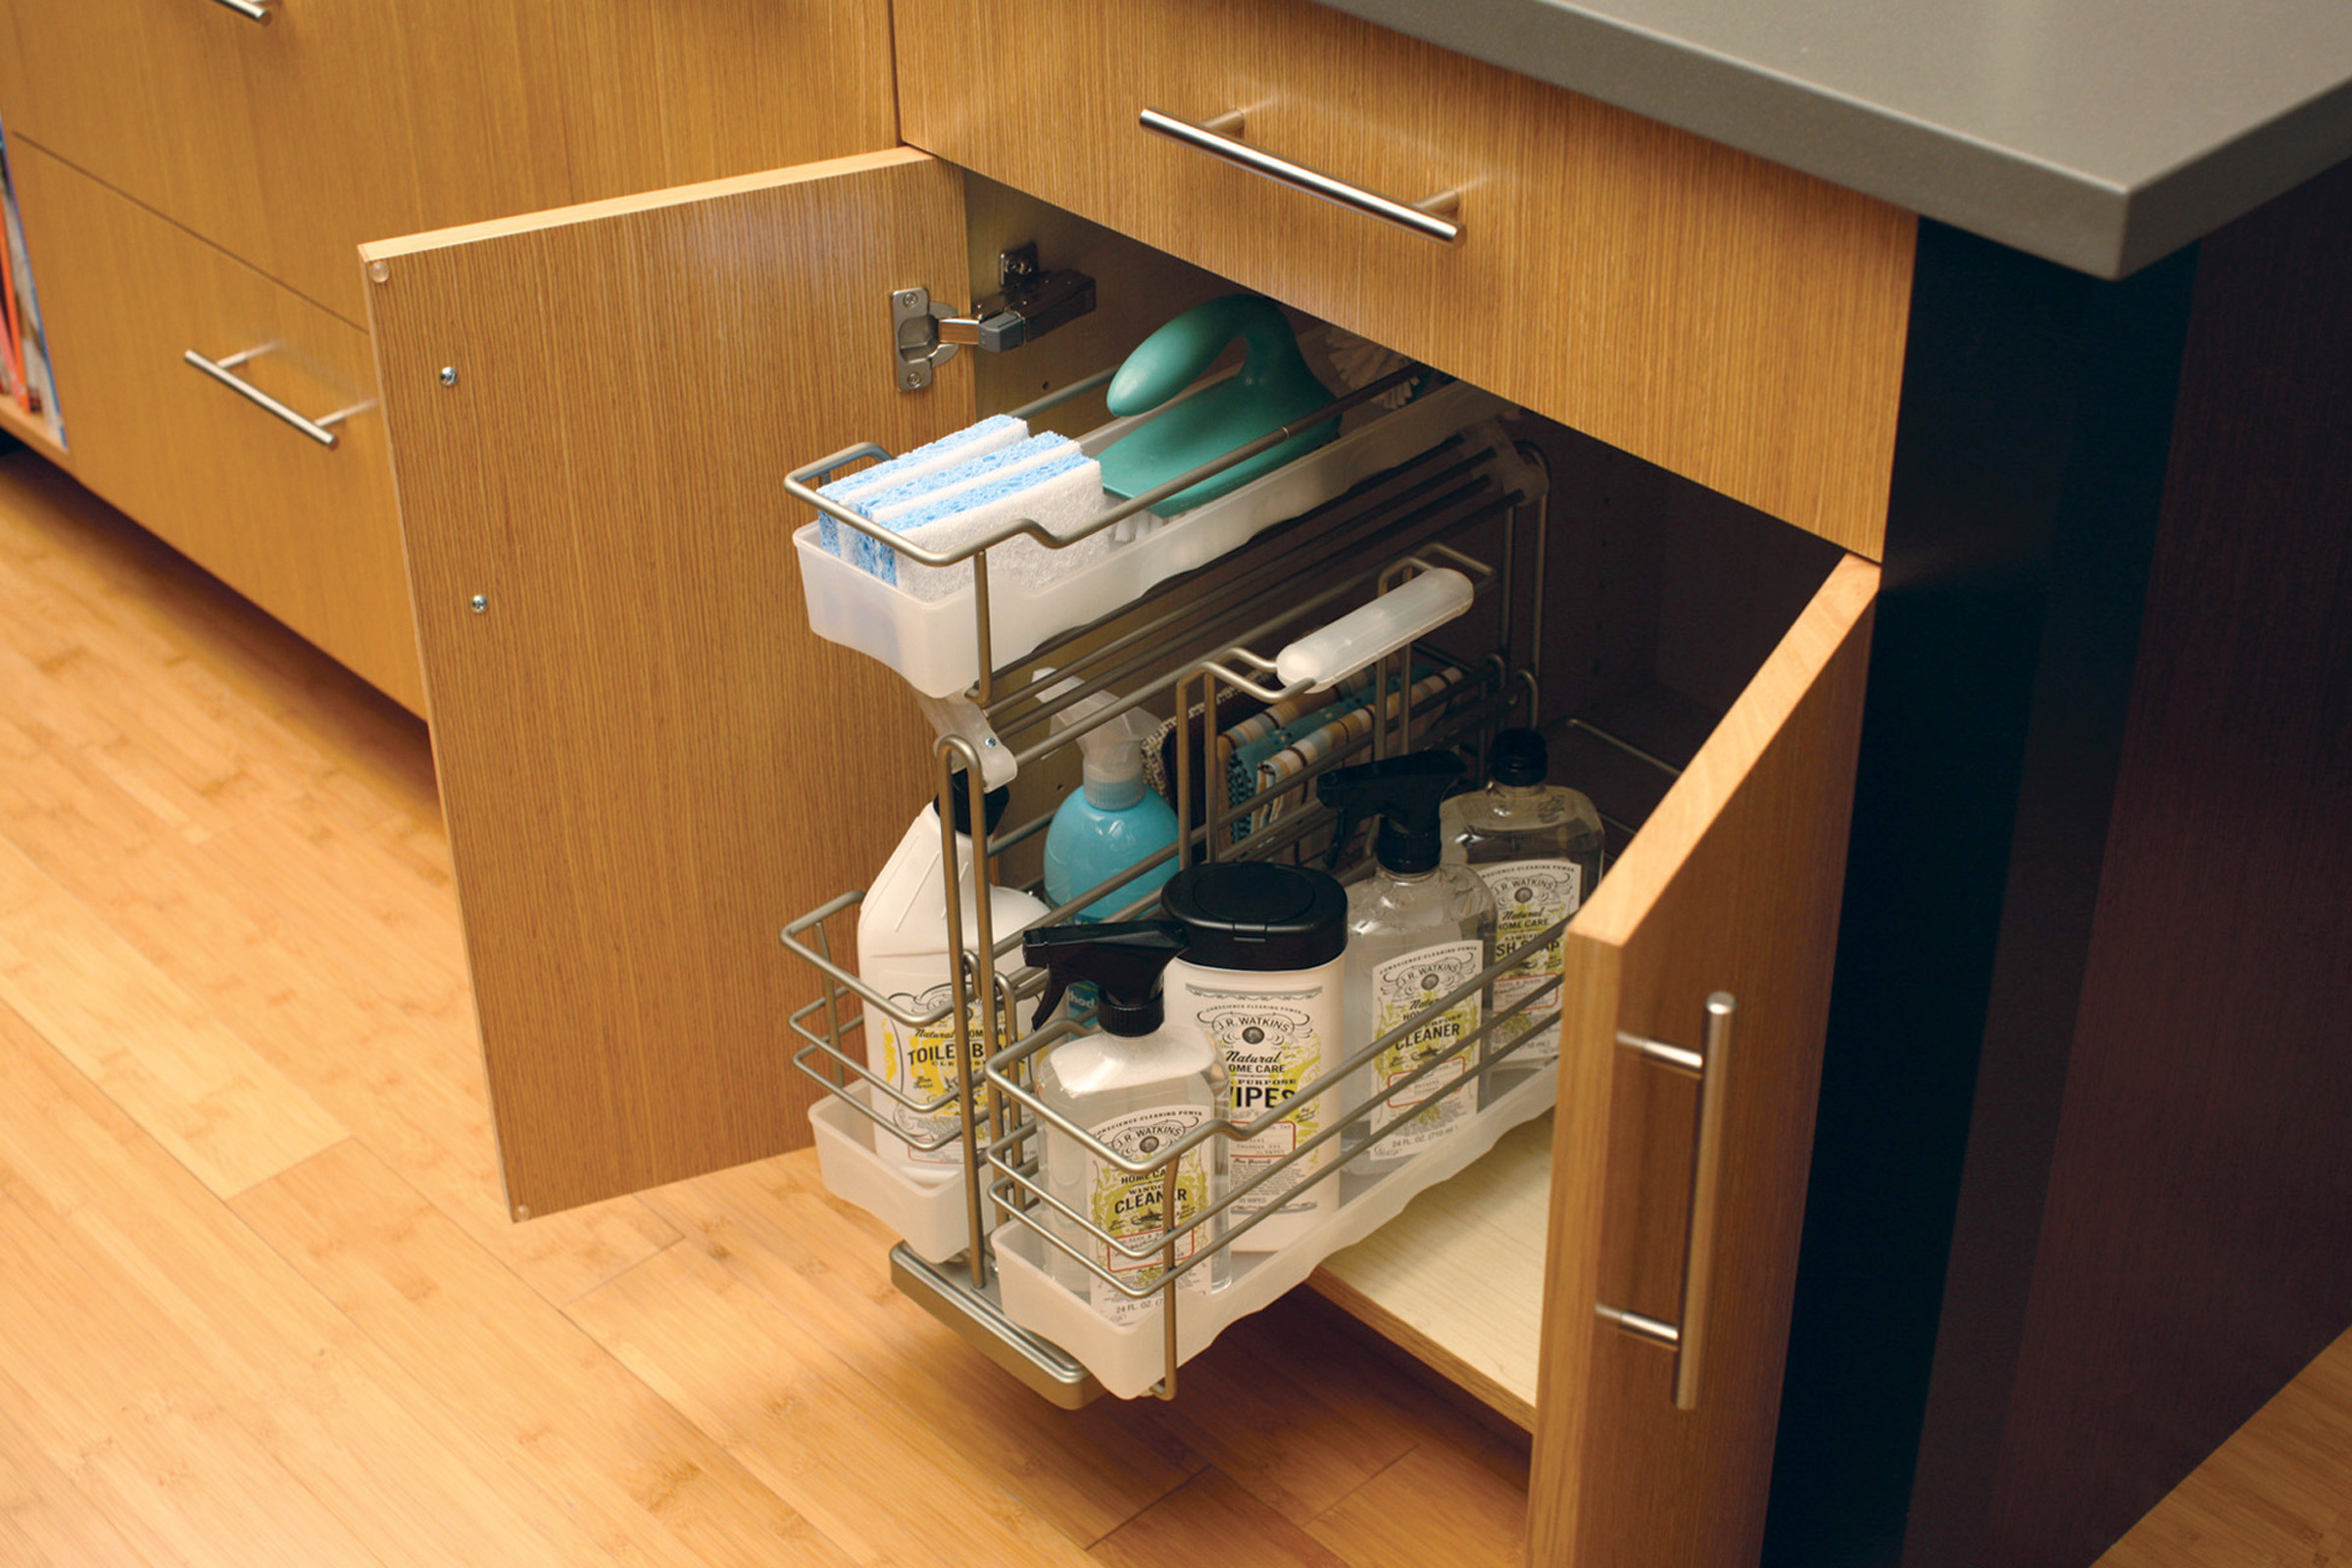 17 Ways to Organise Your Under-sink Kitchen Cabinet